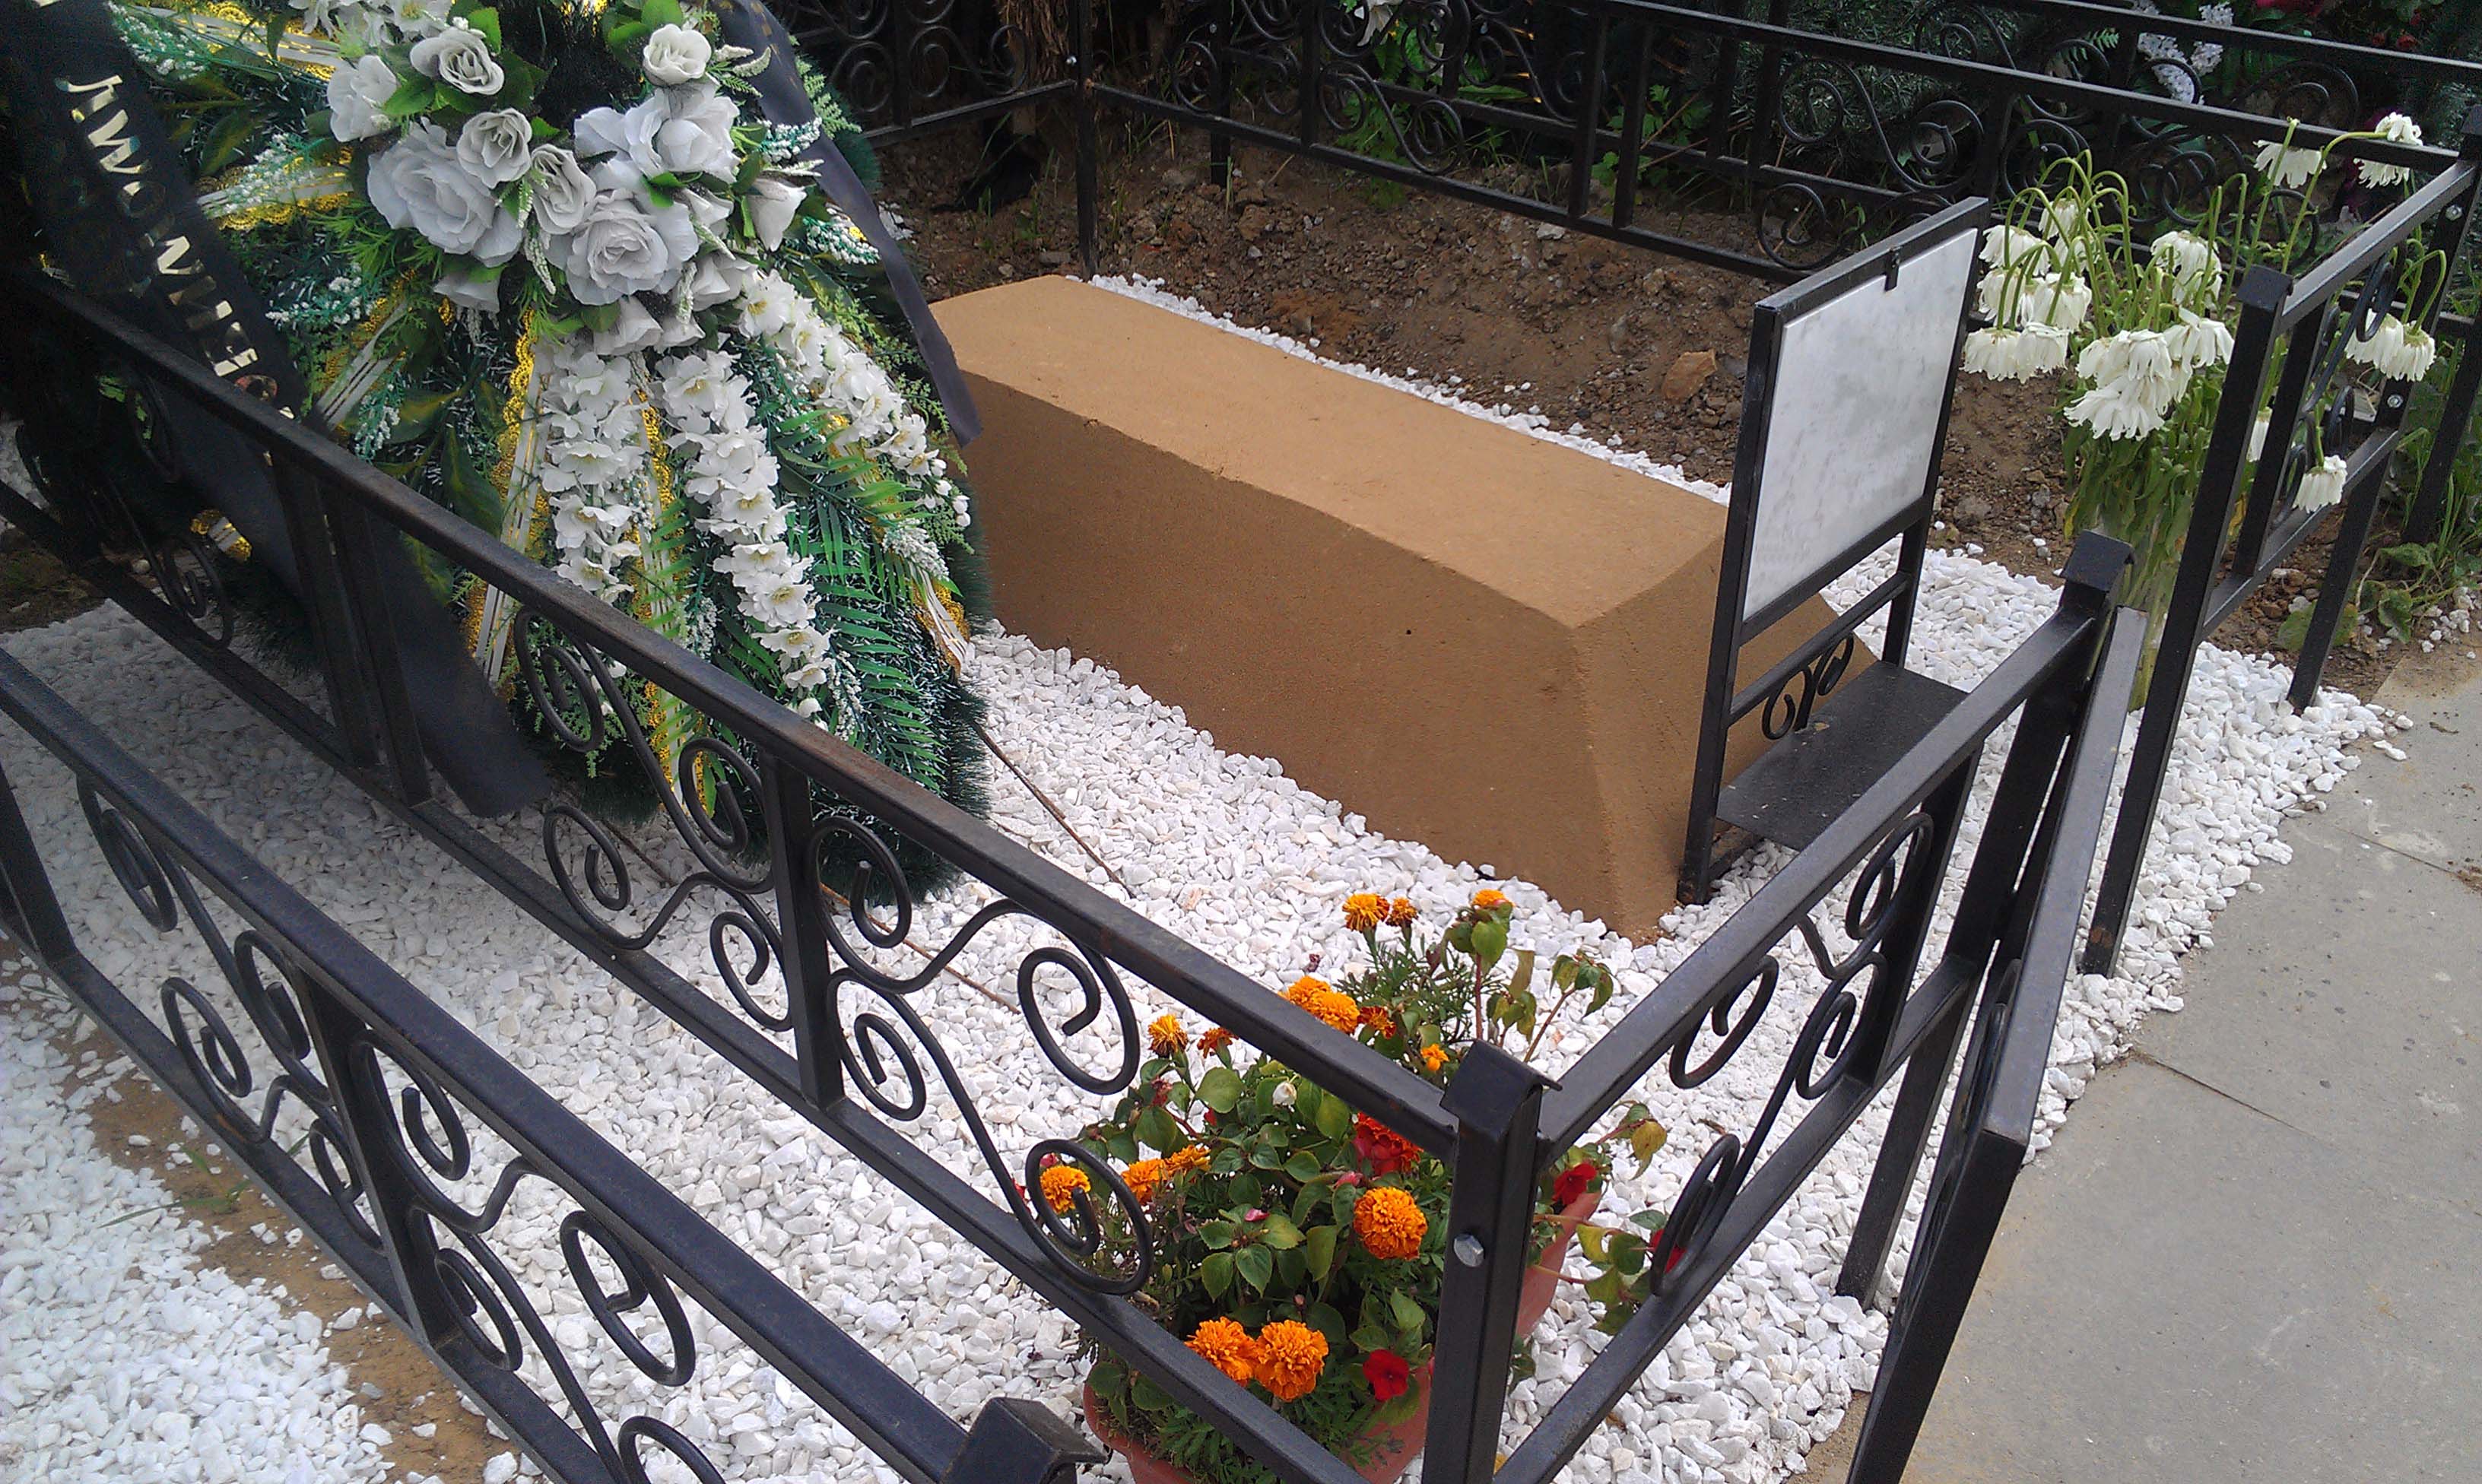 Комплексная услуга № 1 по захоронению гроба с телом умершего на вновь отведенном земельном участке кладбища